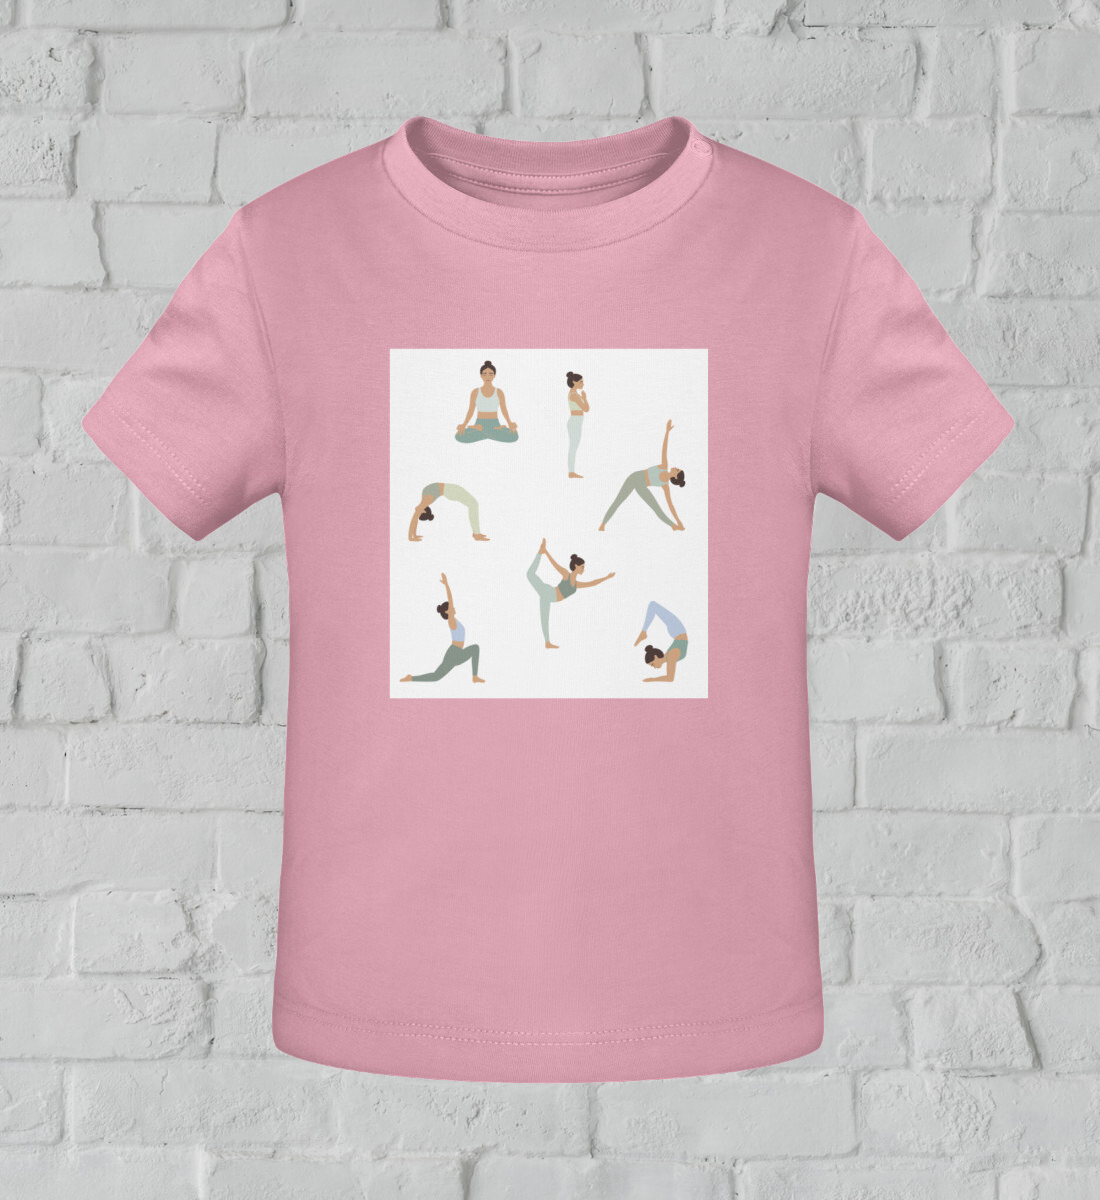 asanas l yoga shirt kinder rosa l yoga kleidung kinder l mode für kinder l nachhaltige kinder kleidung